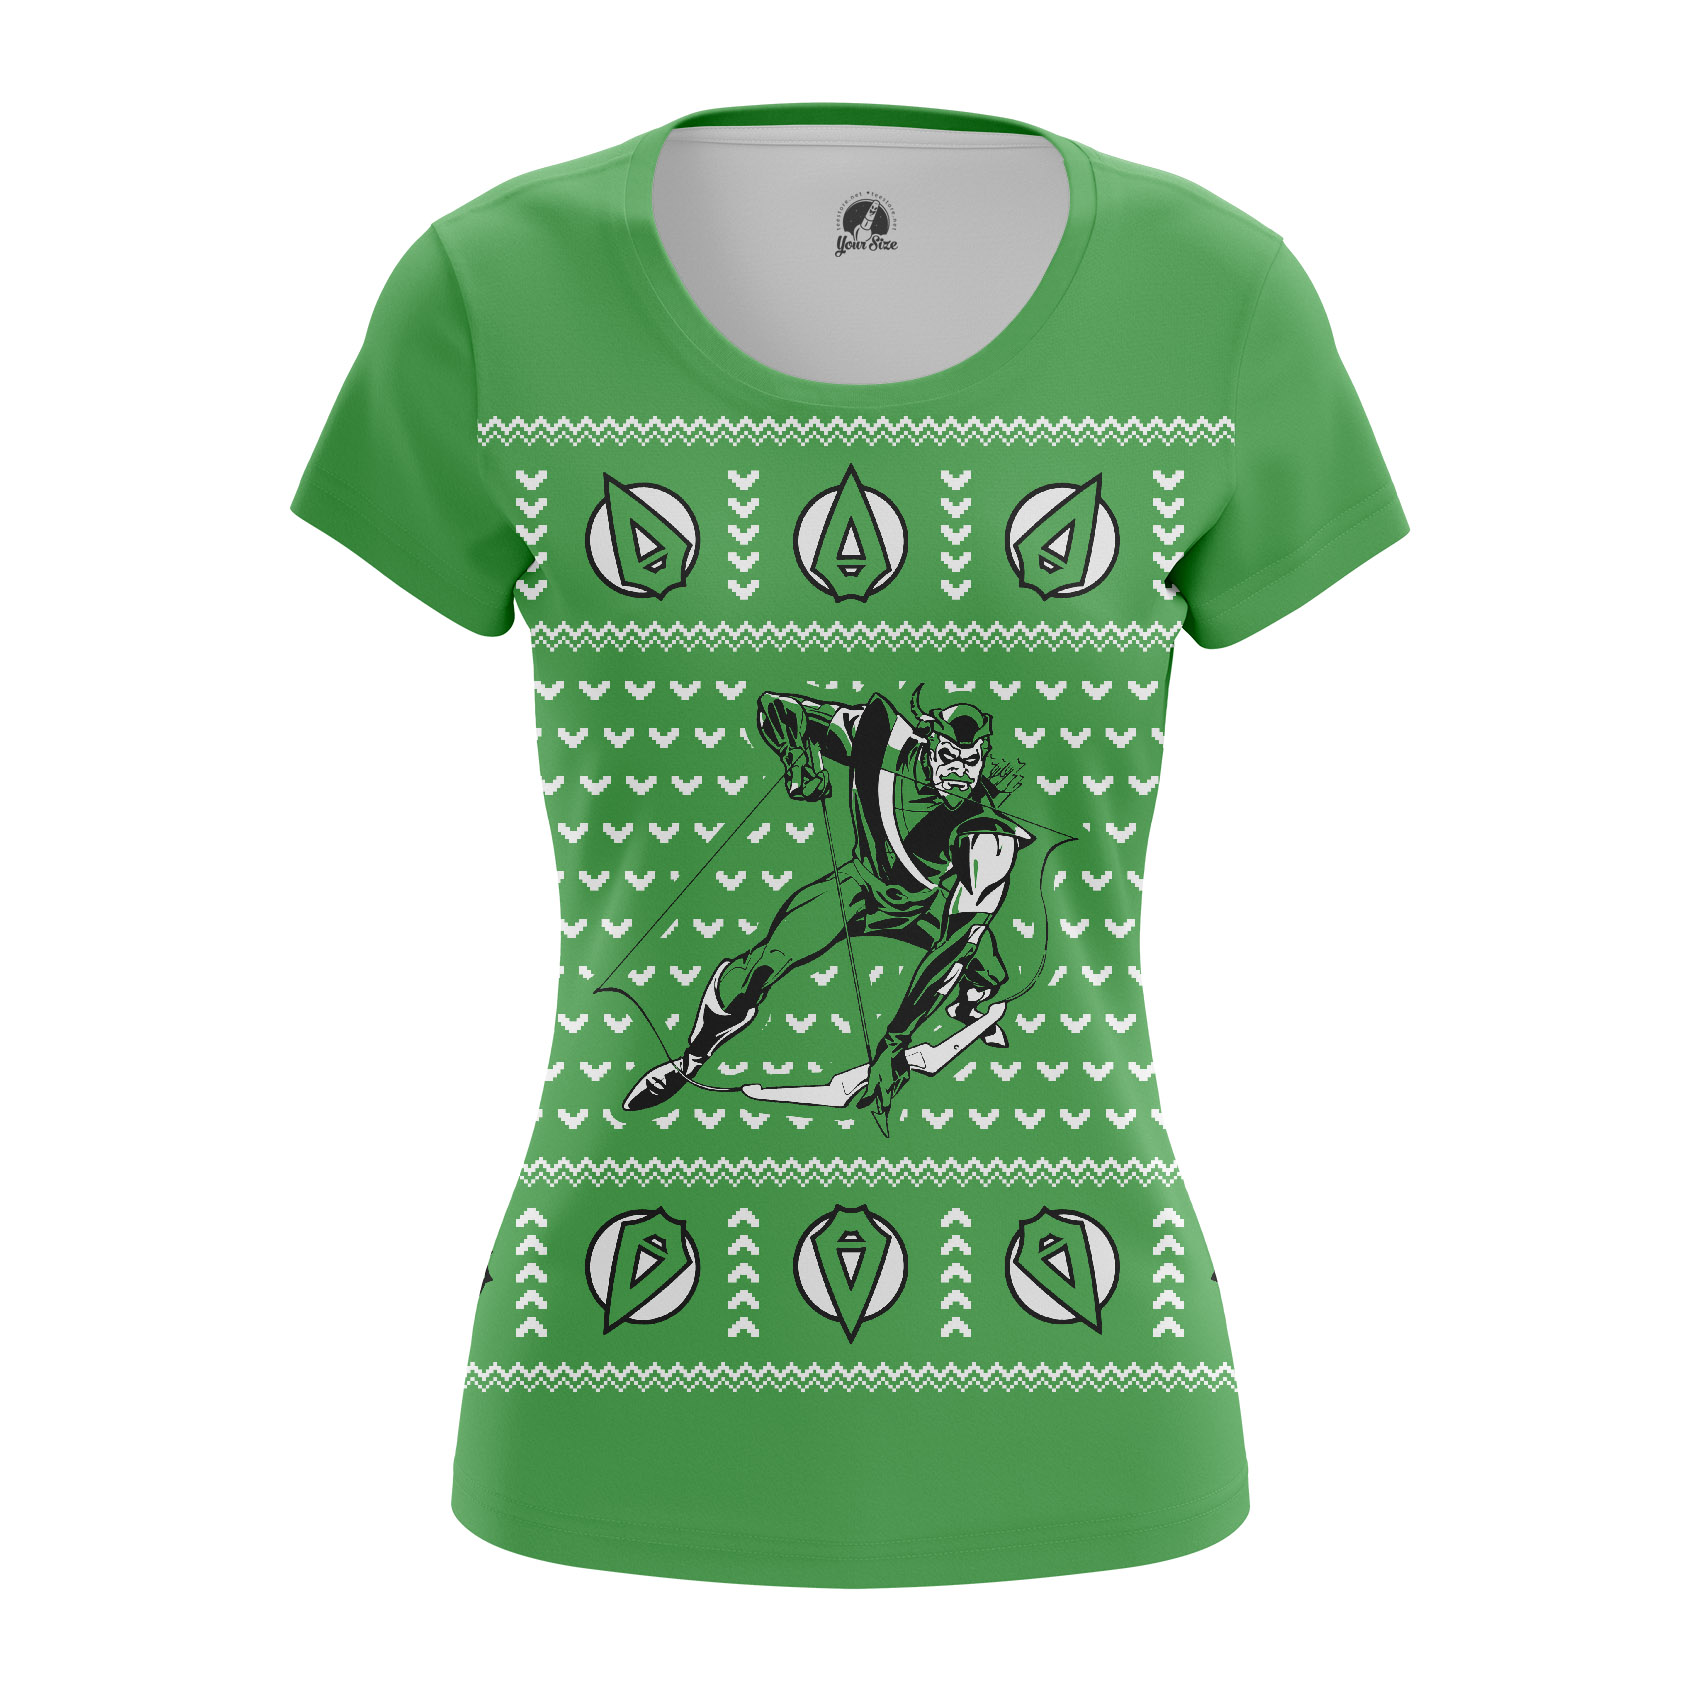 Collectibles Women'S T-Shirt Christmas Arrow Xmas Green